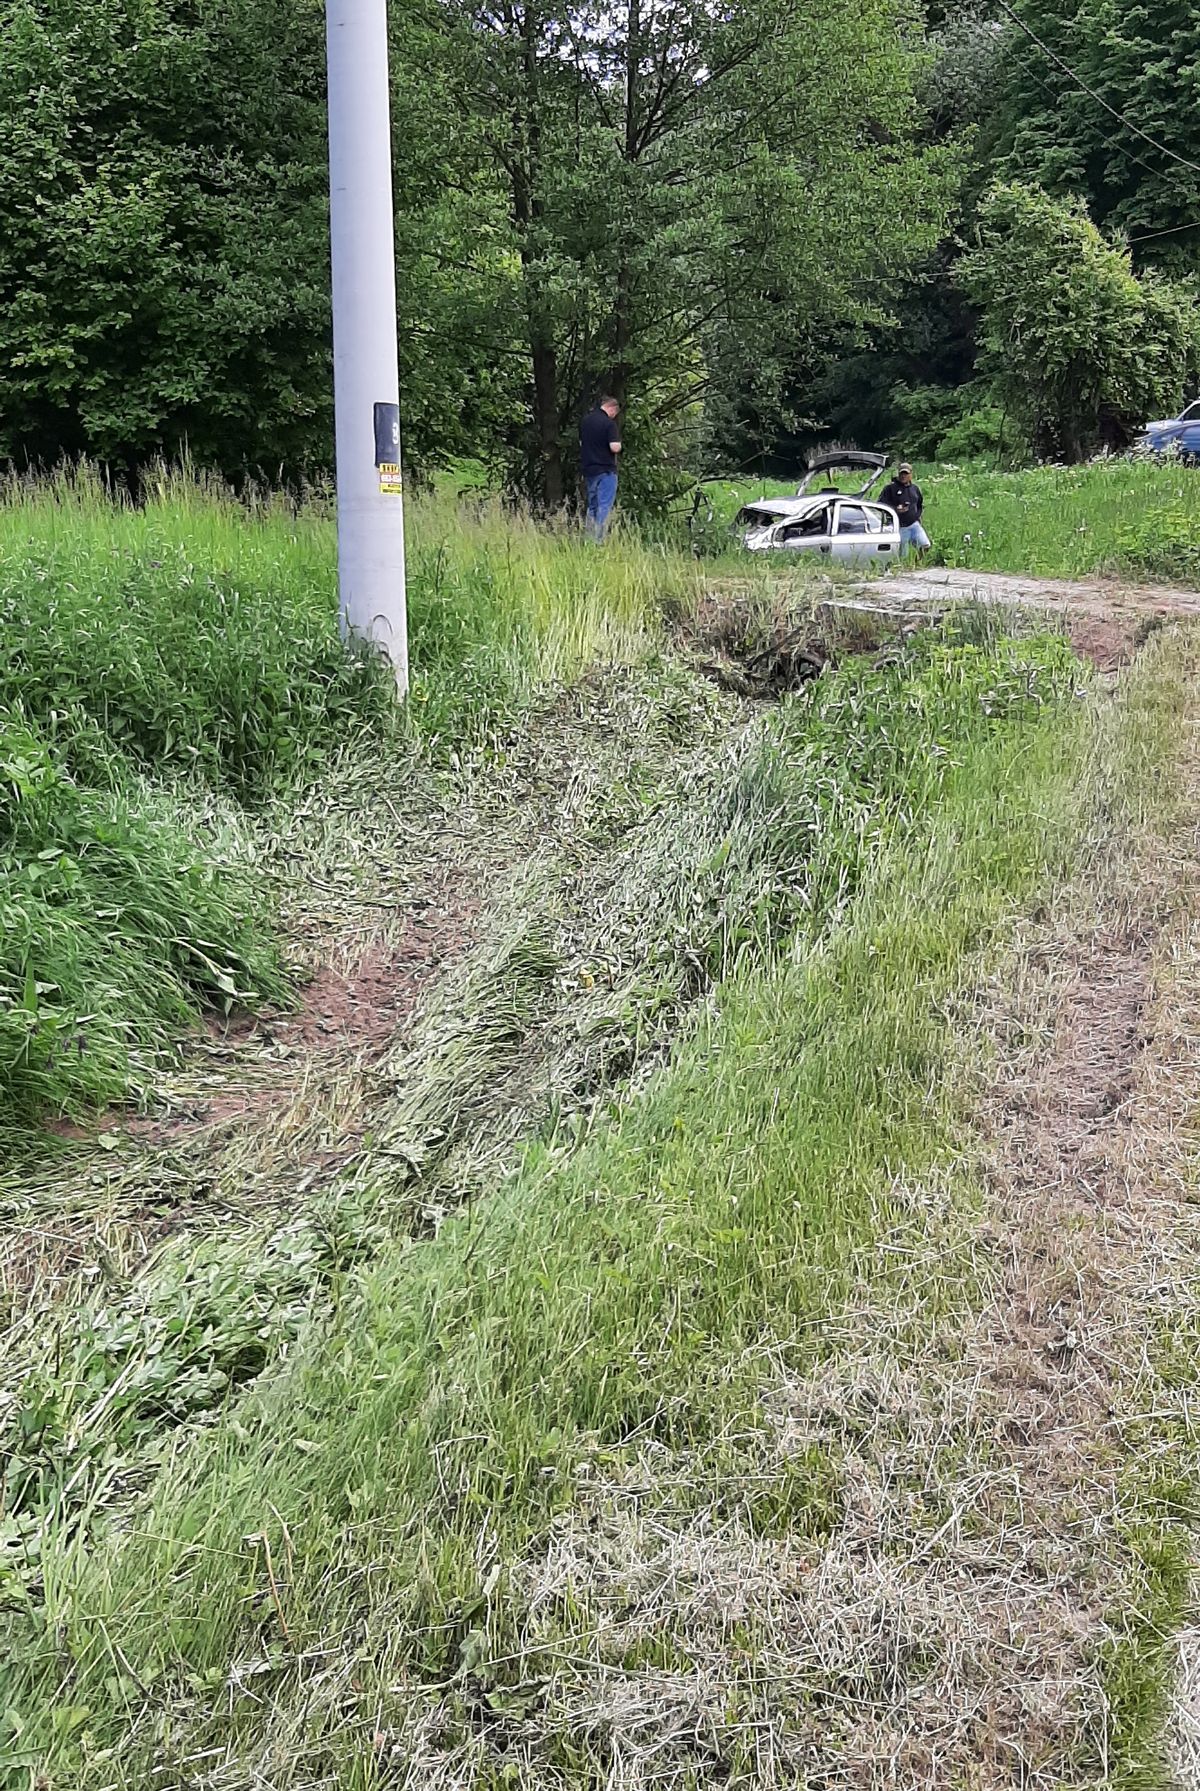 Opel uderzył w przepust i drzewa. Kierowca wydostał się z rozbitego auta, zerwał tablice i uciekł (zdjęcia)